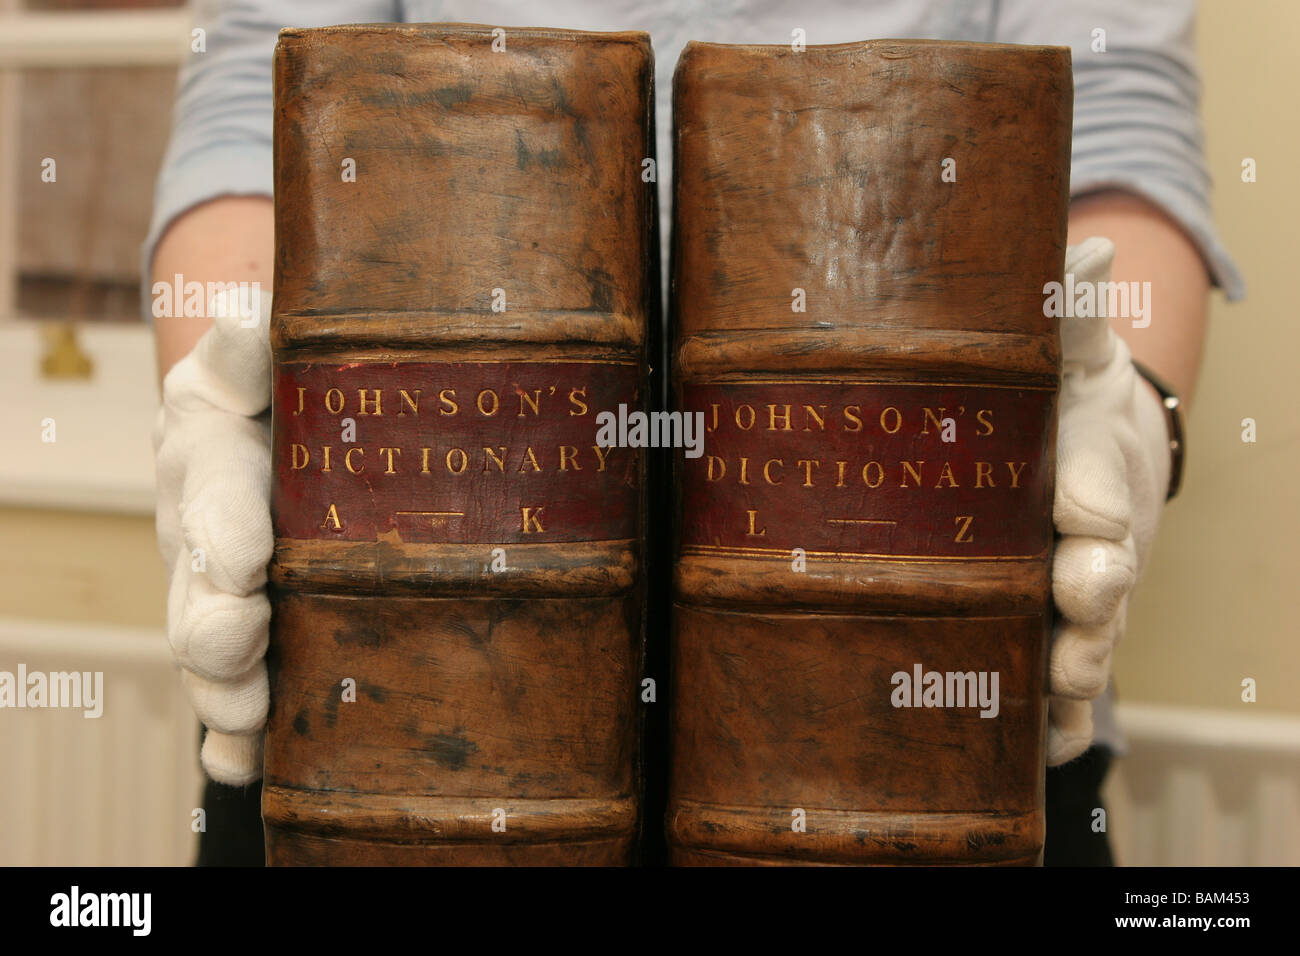 Le Dr Samuel Johnson 's'original dictionary of the English language photographié ici à Madrid, Espagne Banque D'Images